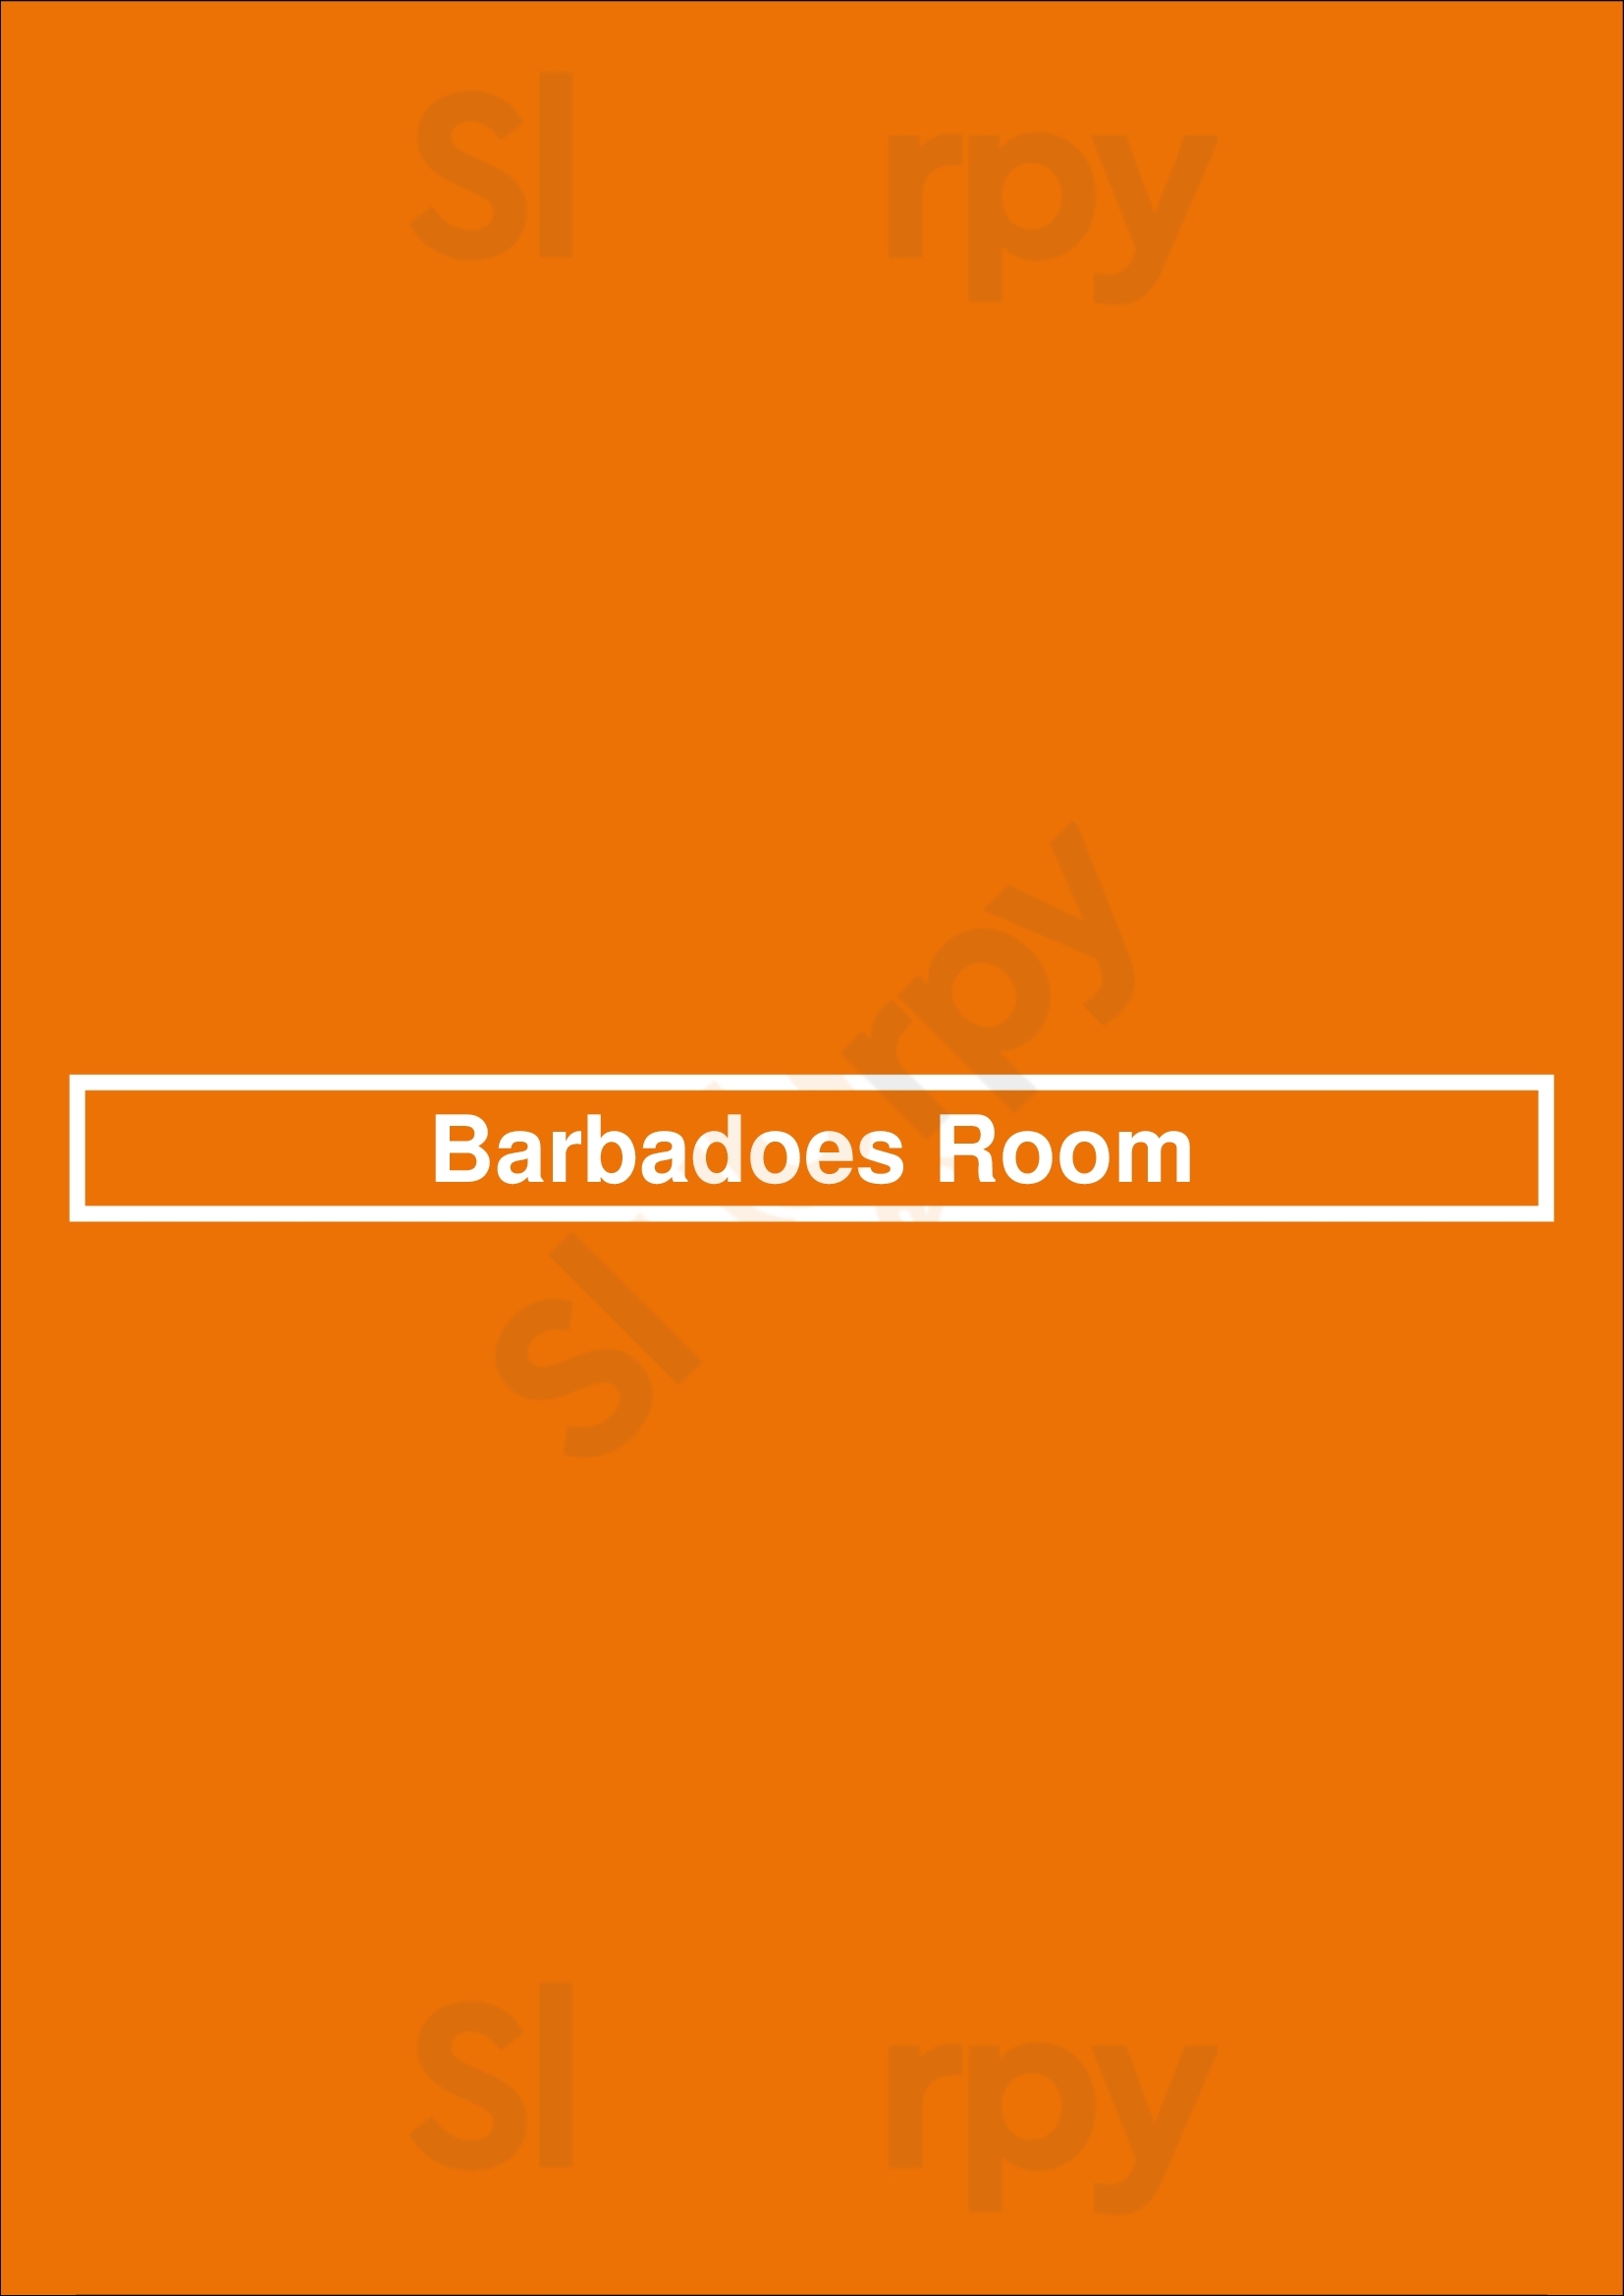 Barbadoes Room Charleston Menu - 1